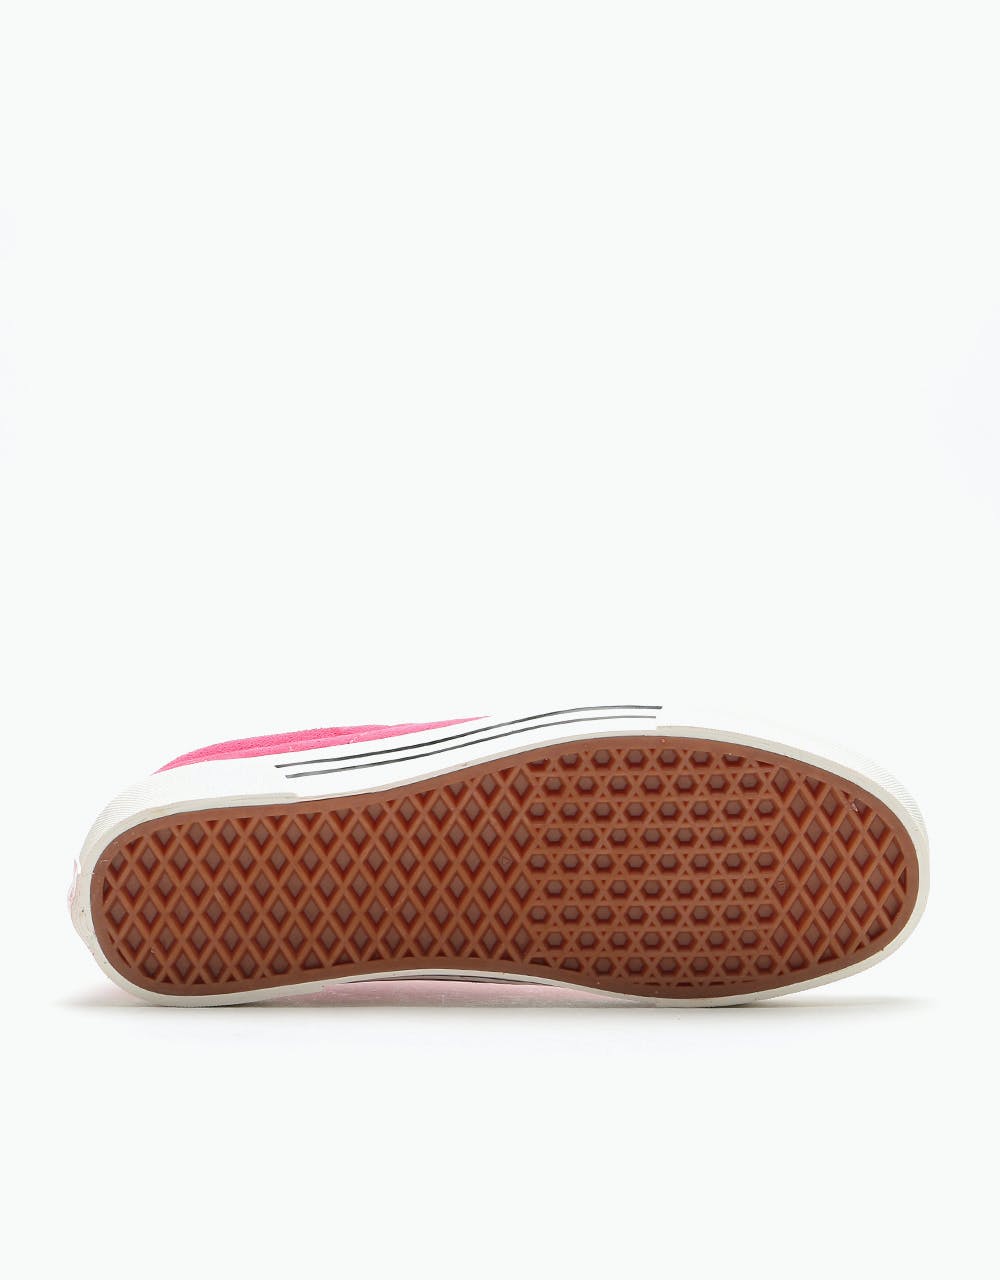 Vans Sid DX Skate Shoes - (Anaheim Factory) OG Pink/OG White